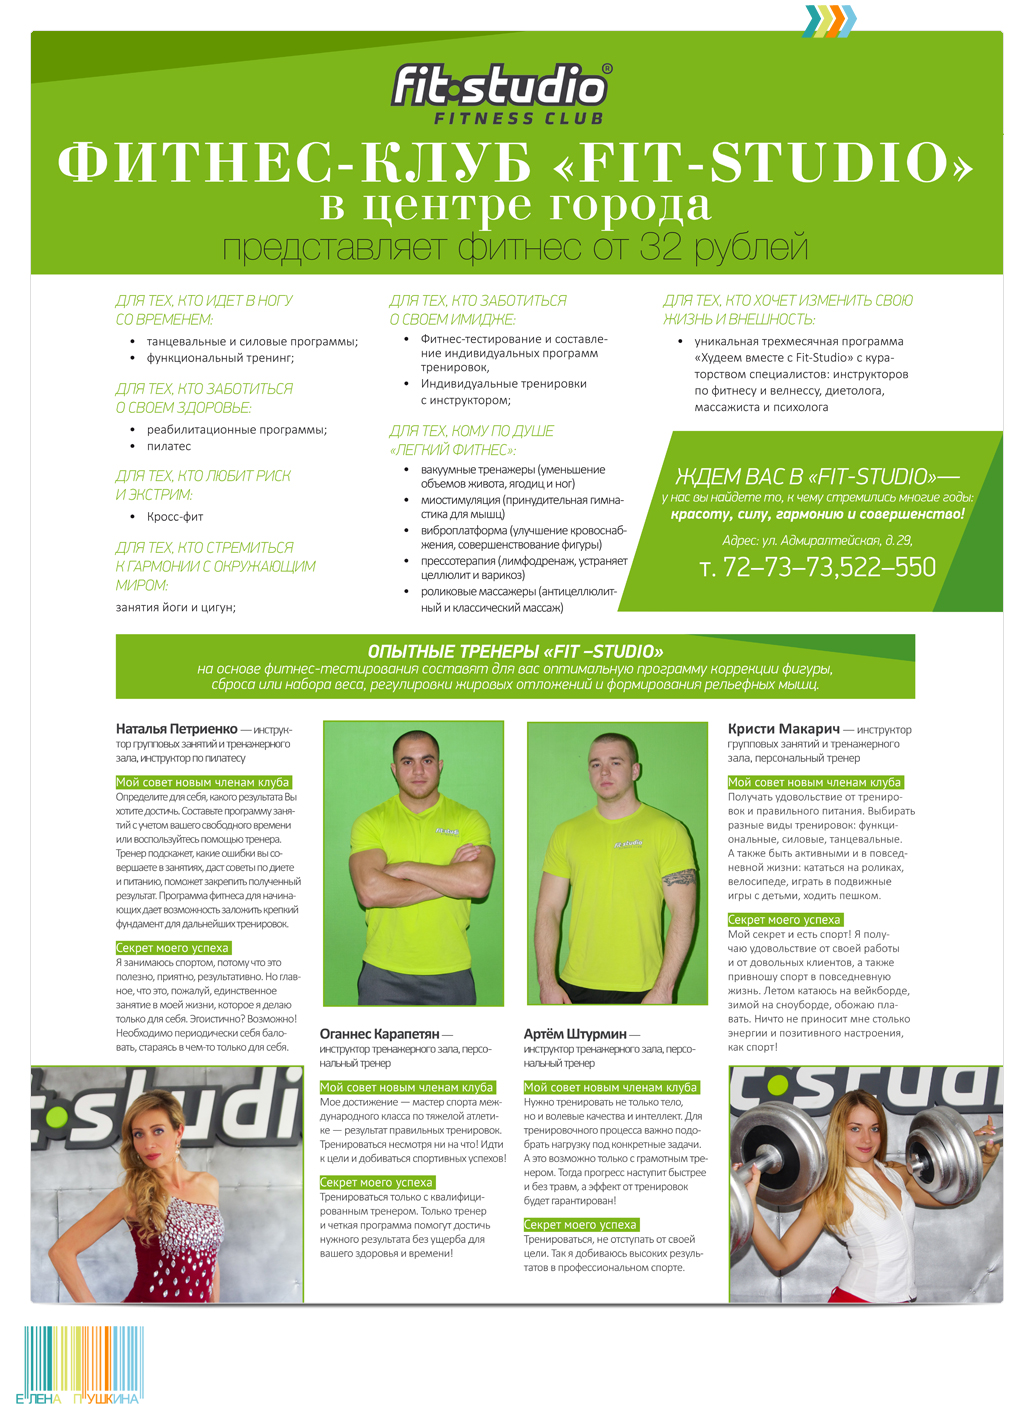 Дизайн рекламной листовки для федеральной сети фитнес-клубов «Fit-Studio» Презентационный дизайн Портфолио